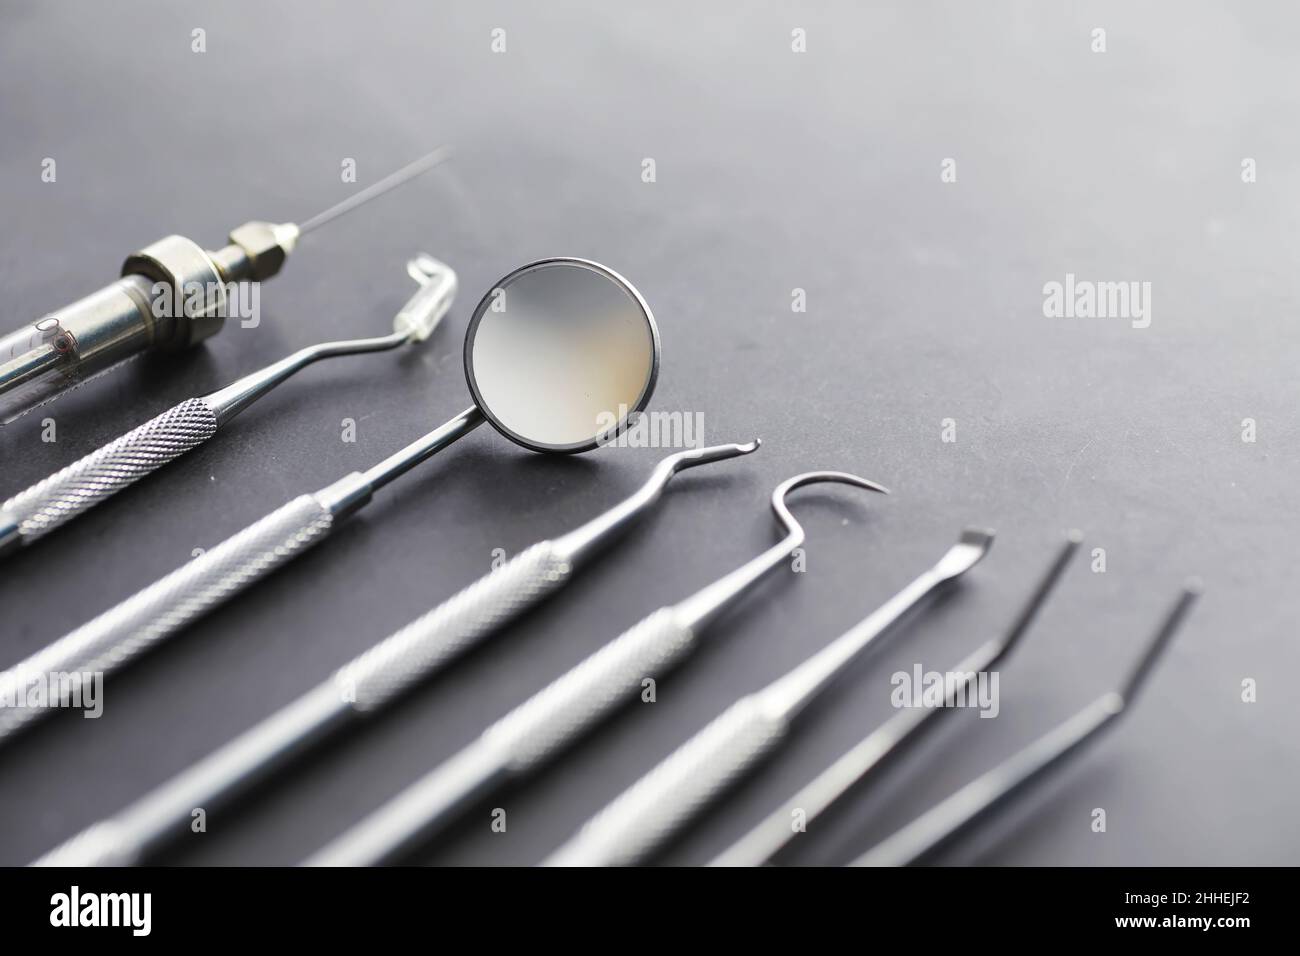 Ausrüstung für die Zahnarztpraxis. Orthopädische Instrumente. Zahntechniker  mit Arbeitswerkzeugen. Zahnarztwerkzeuge aus Metall Stockfotografie - Alamy